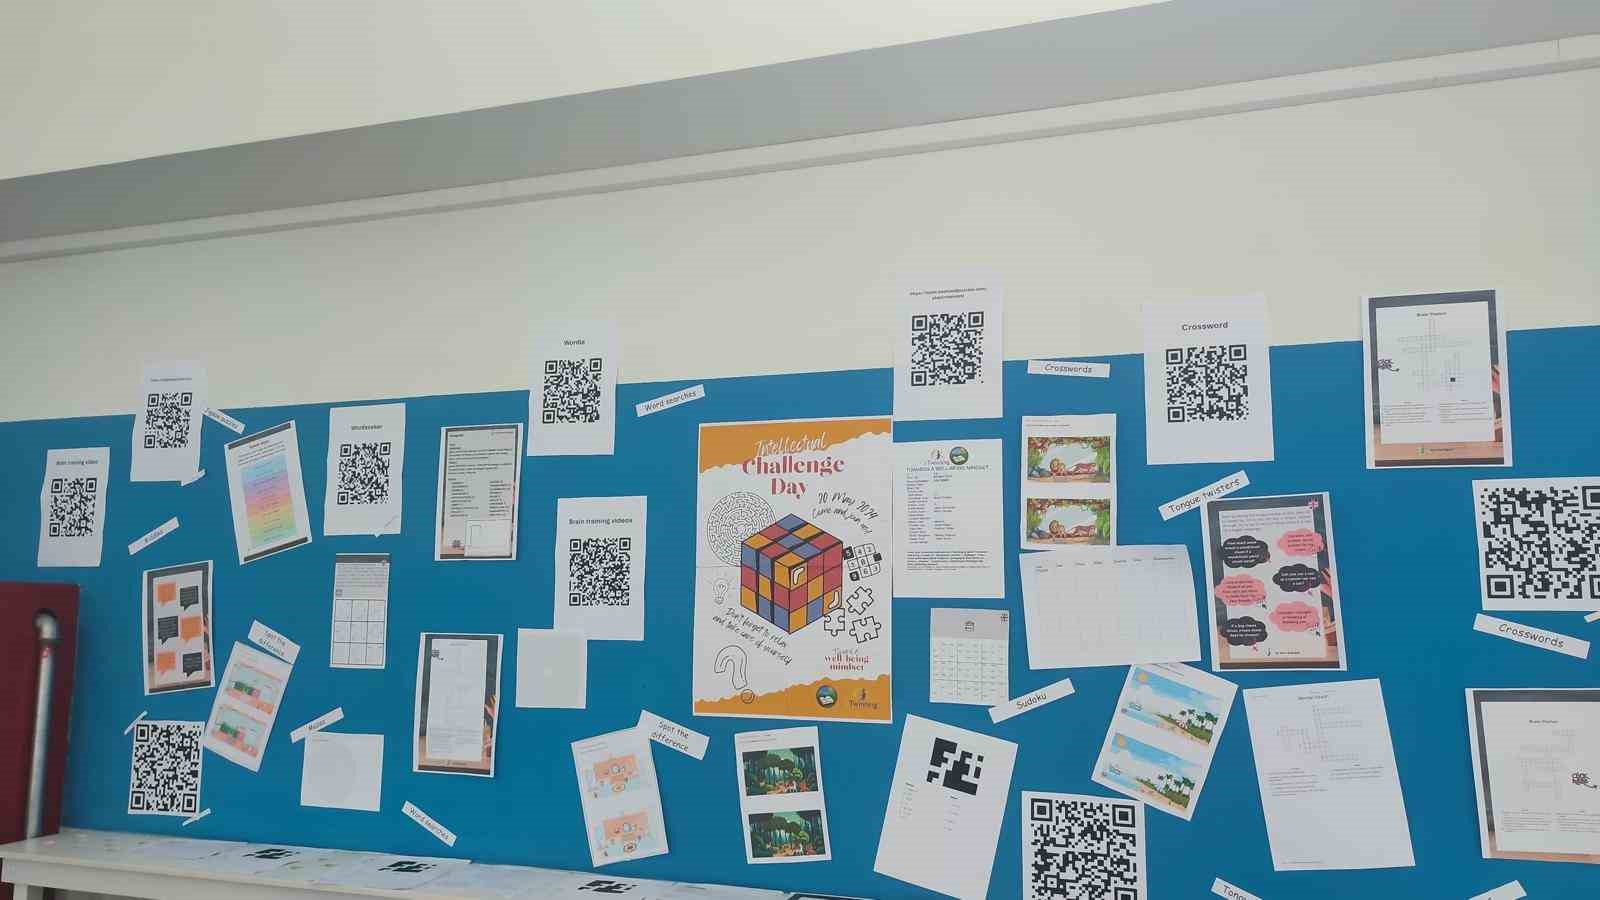 Eskişehir Hacı Süleyman Çakır Kız Anadolu Lisesi öğrencileri uluslararası eTwinning projesine katıldı